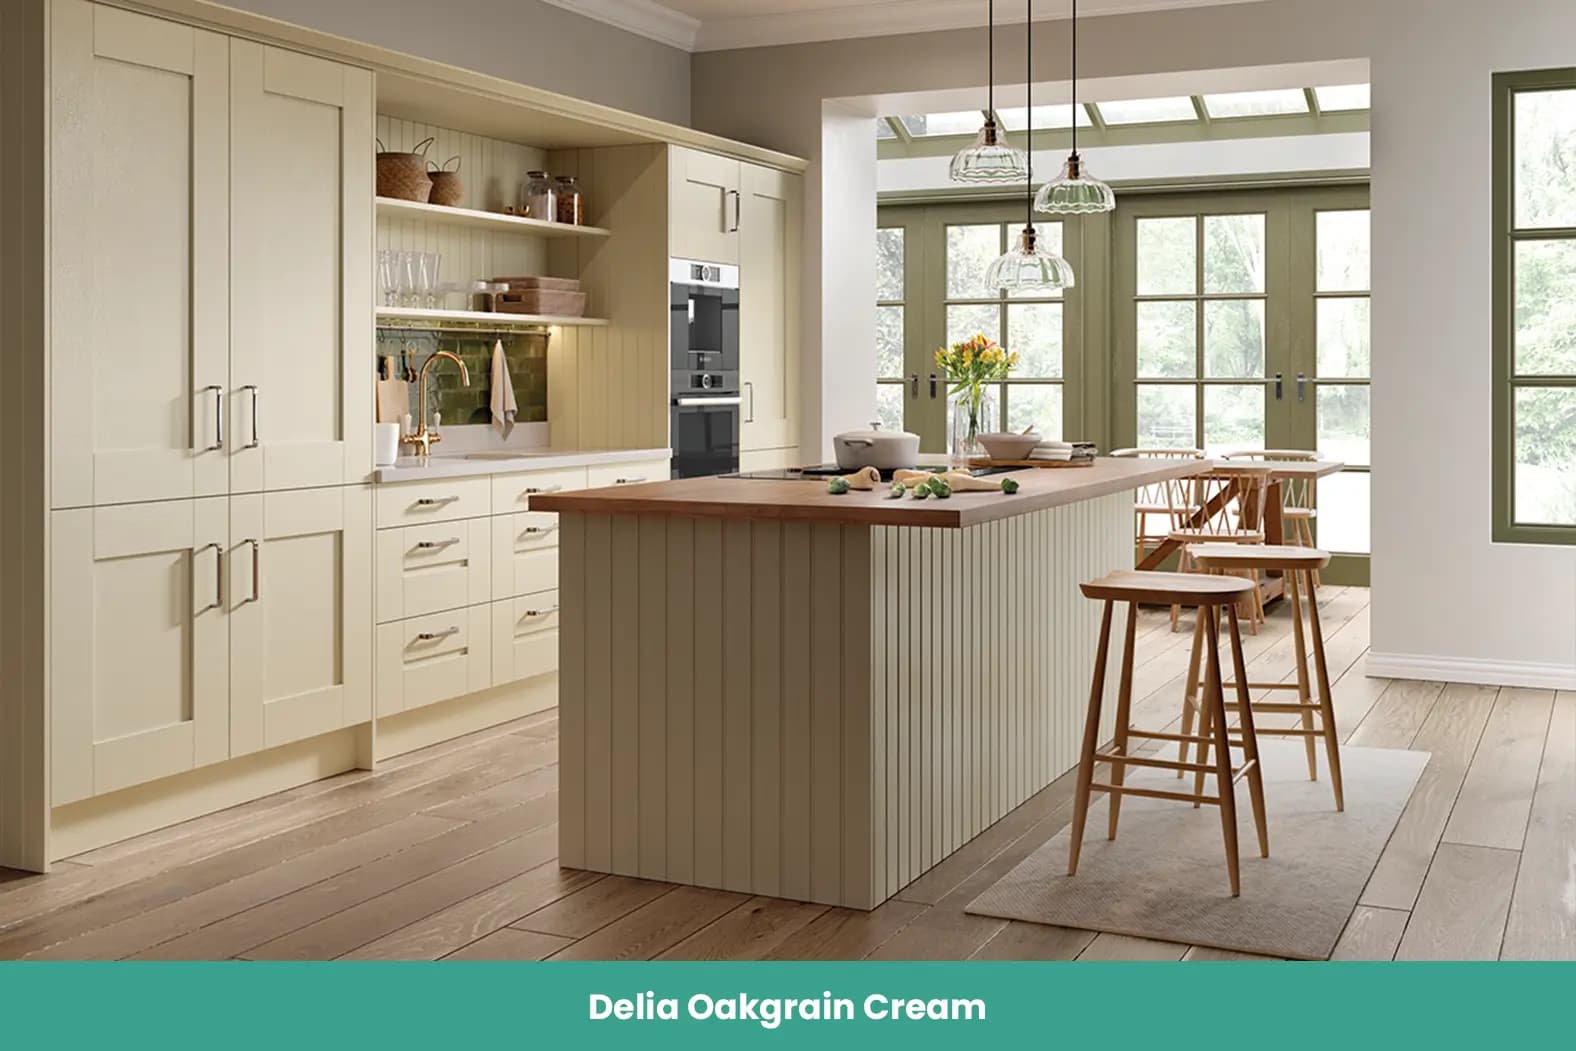 Delia Oakgrain Cream Kitchen